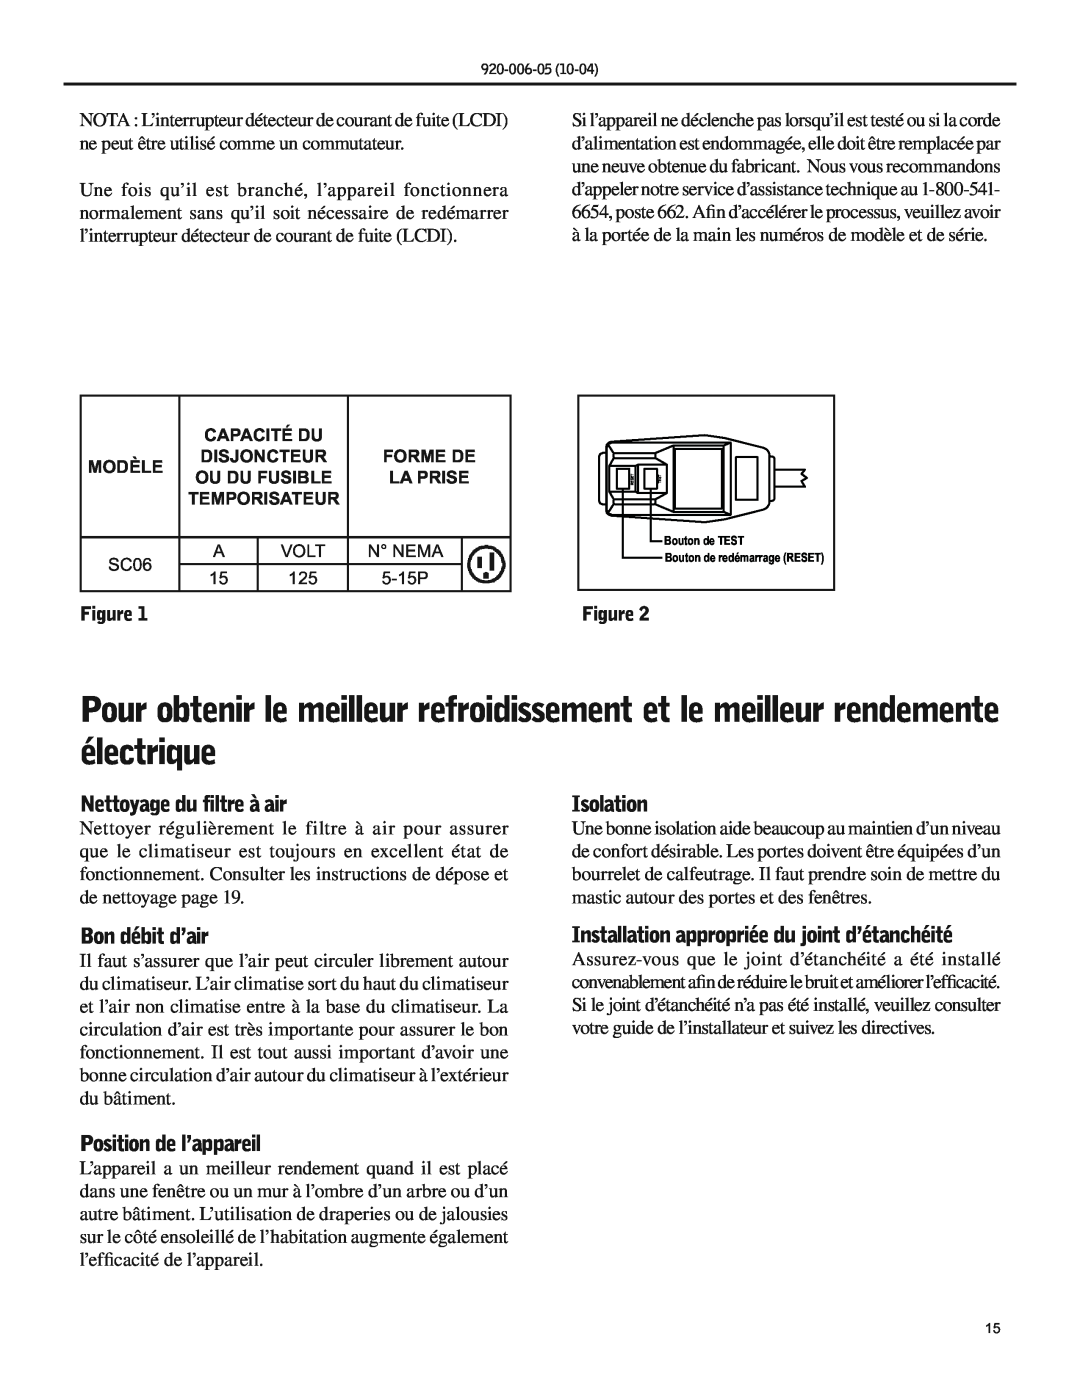 Friedrich SC06 manual Nettoyage du filtre à air, Isolation, Bon débit d’air, Installation appropriée du joint d’étanchéité 